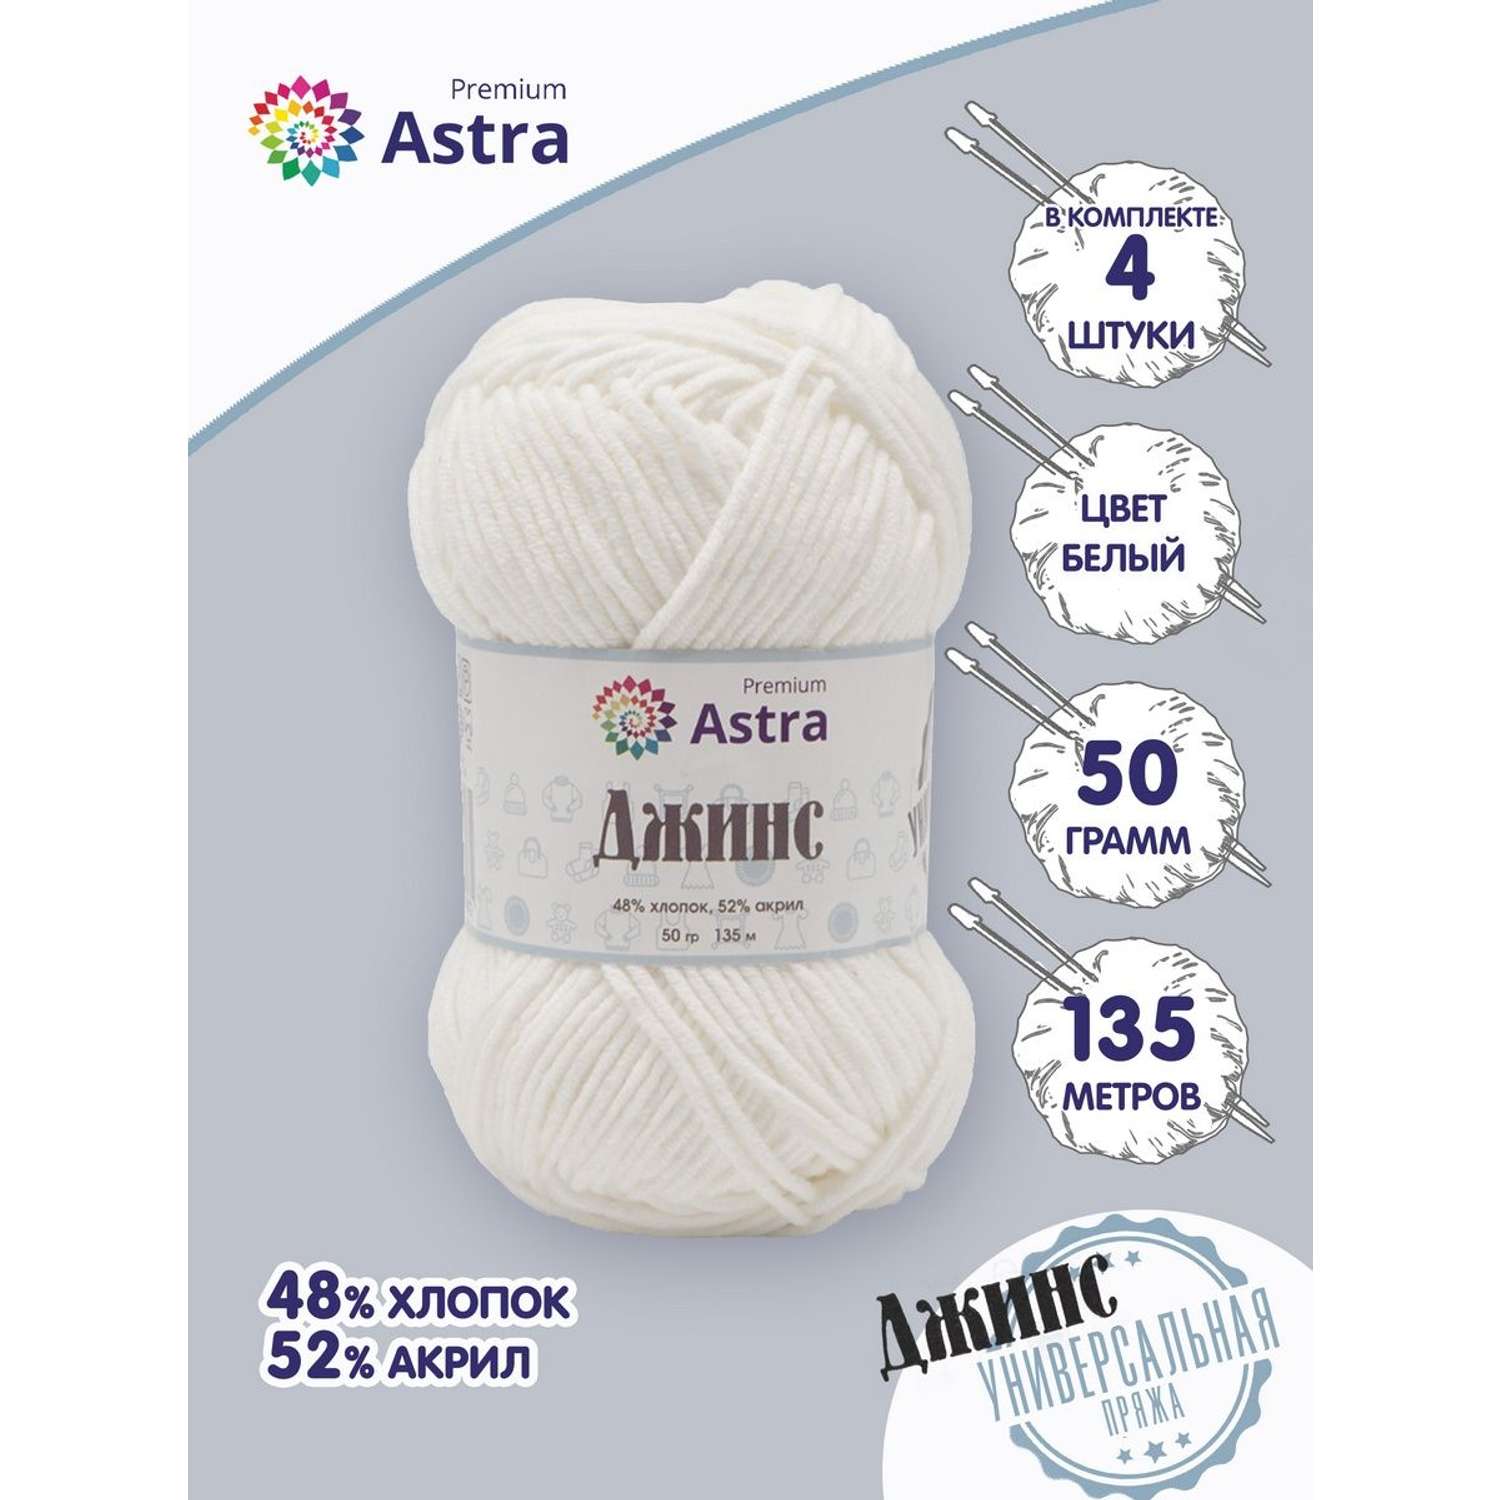 Пряжа для вязания Astra Premium джинс для повседневной одежды акрил хлопок 50 гр 135 м 001 белый 4 мотка - фото 1